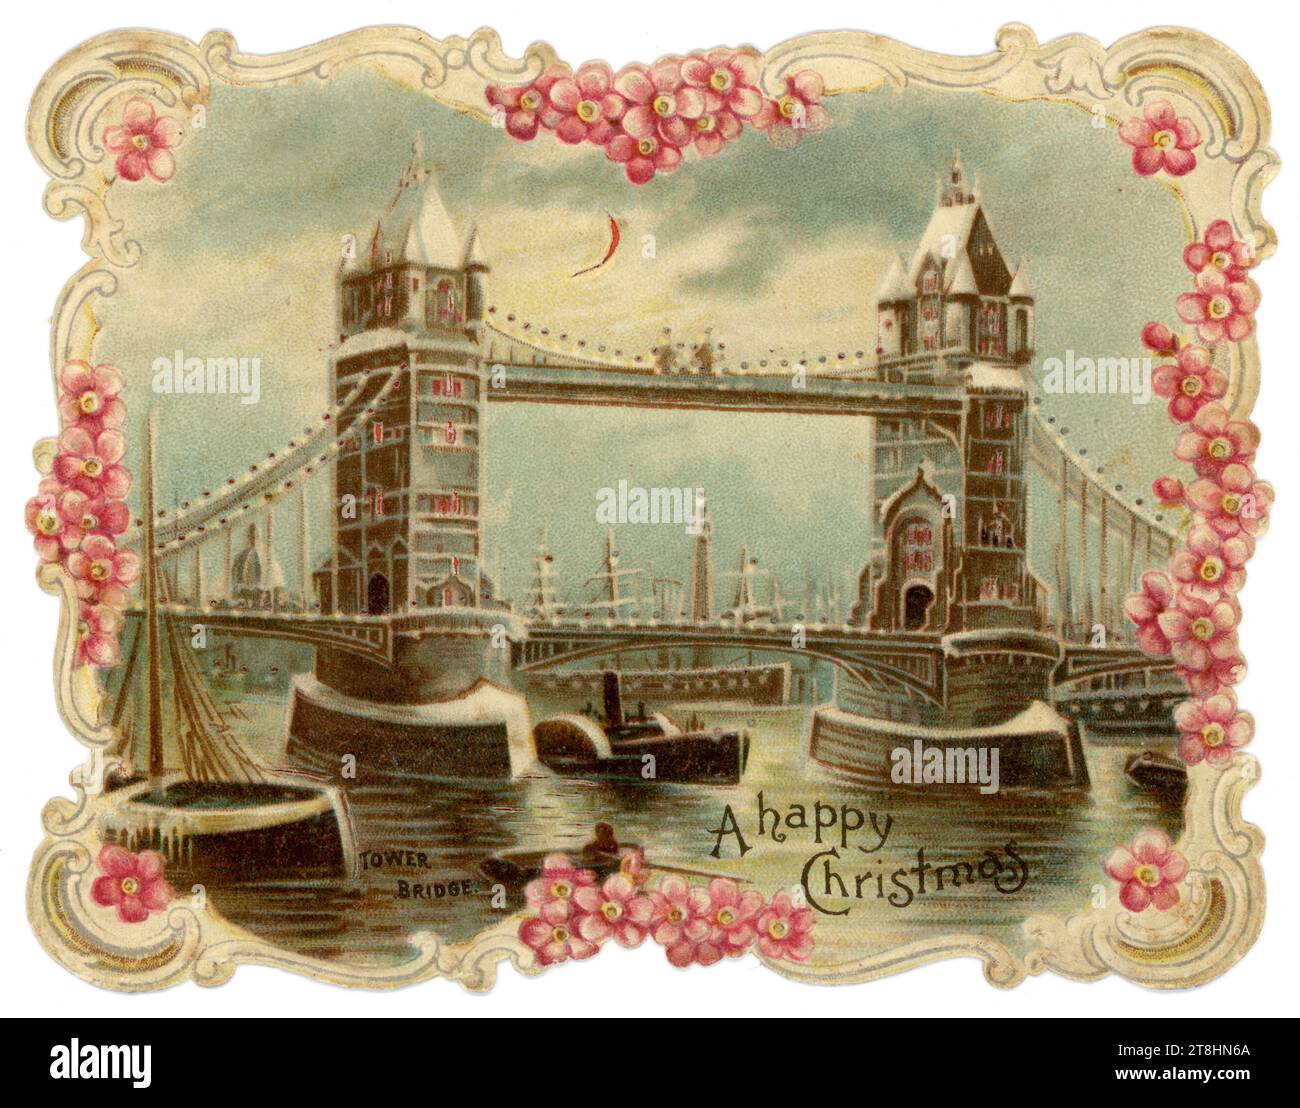 Original magnifique victorien 'tenir à la lumière' nouveauté carte de voeux de Noël de Tower Bridge, Londres. cuiseur vapeur en dessous. Salutation est de souhaiter un joyeux Noël 'Londres, Angleterre, Royaume-Uni Circa 1880's 1890's Banque D'Images